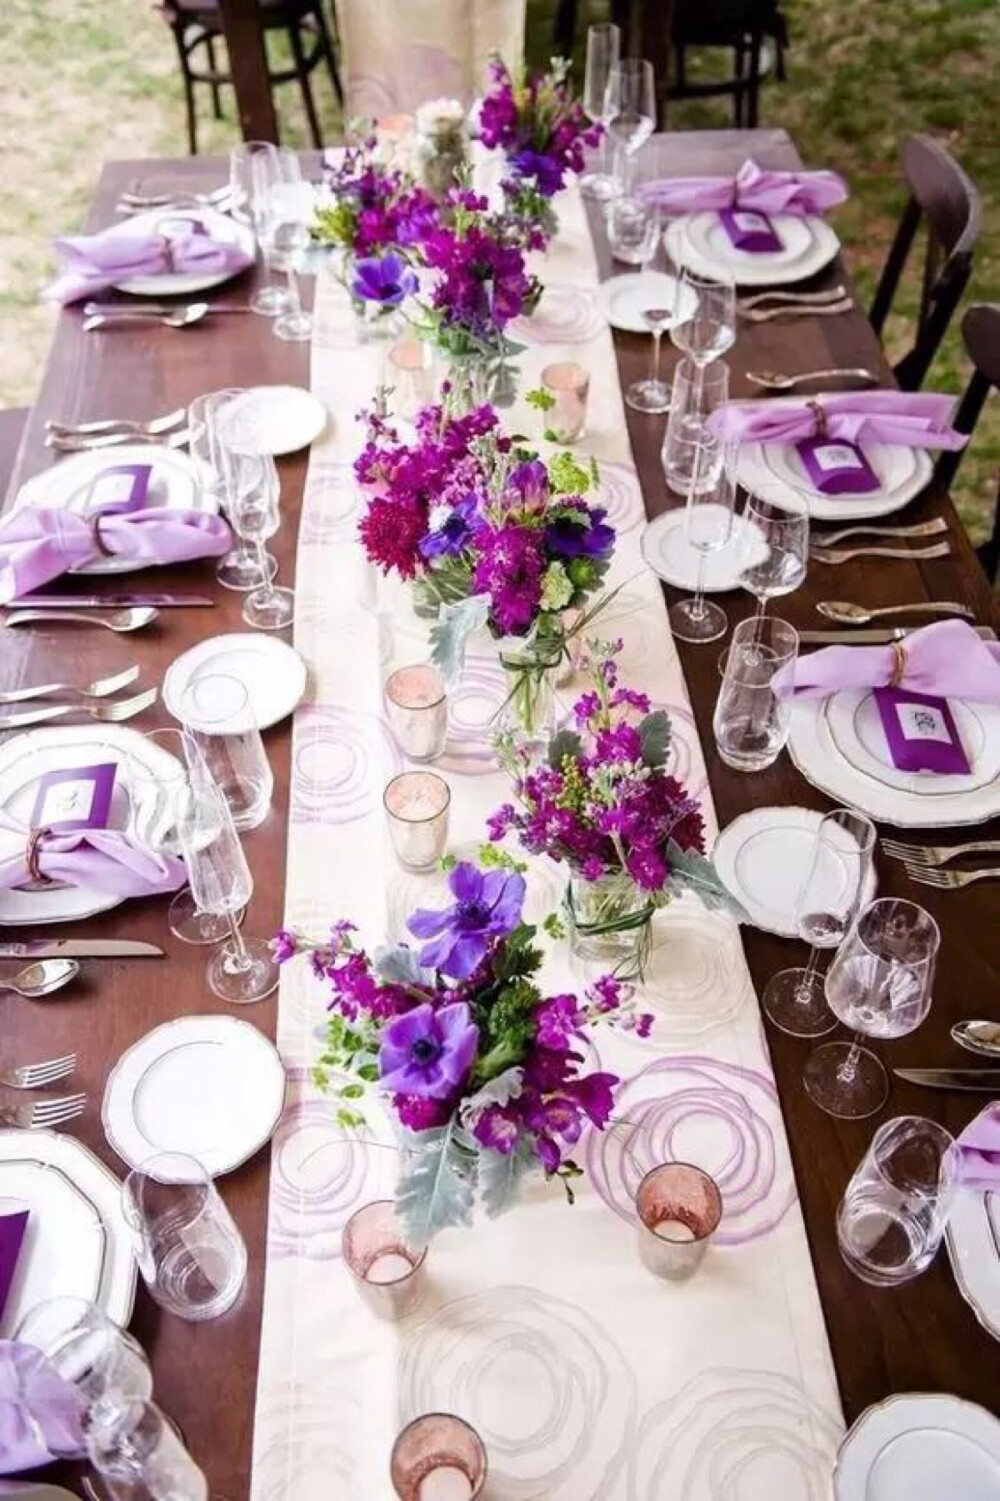 紫色是一个很难用的颜色，但它在宴会布置中还挺常见的，尤其是在婚礼上，香芋紫与白色搭配很有梦幻感。在家宴上用紫色，或许可以来点深色的，也是高贵优雅的调性。